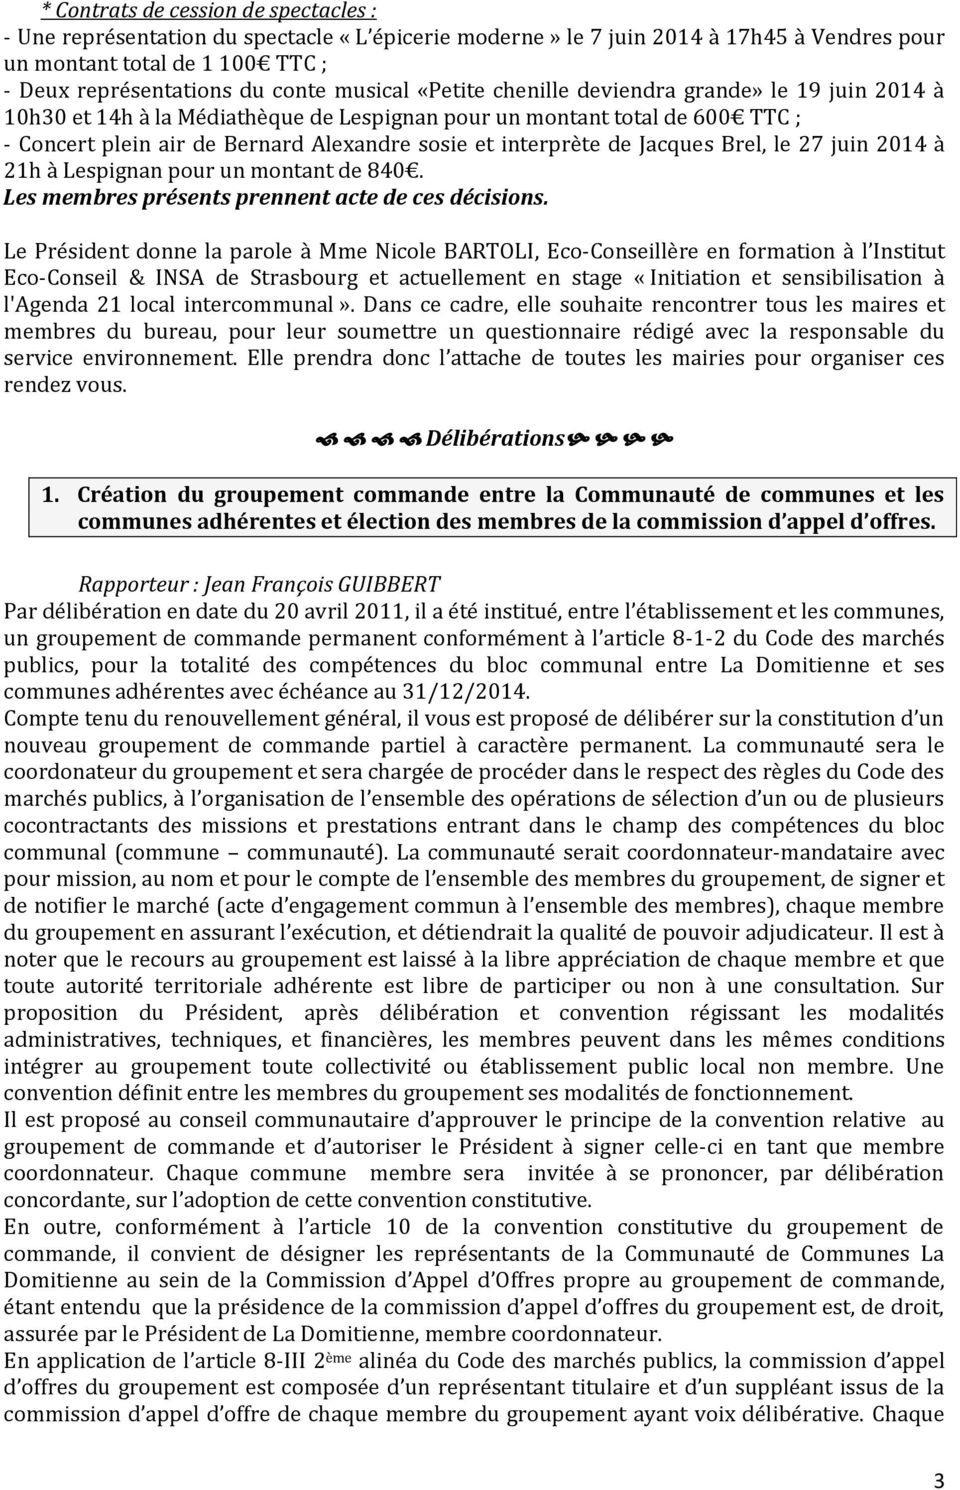 de Jacques Brel, le 27 juin 2014 à 21h à Lespignan pour un montant de 840. Les membres présents prennent acte de ces décisions.